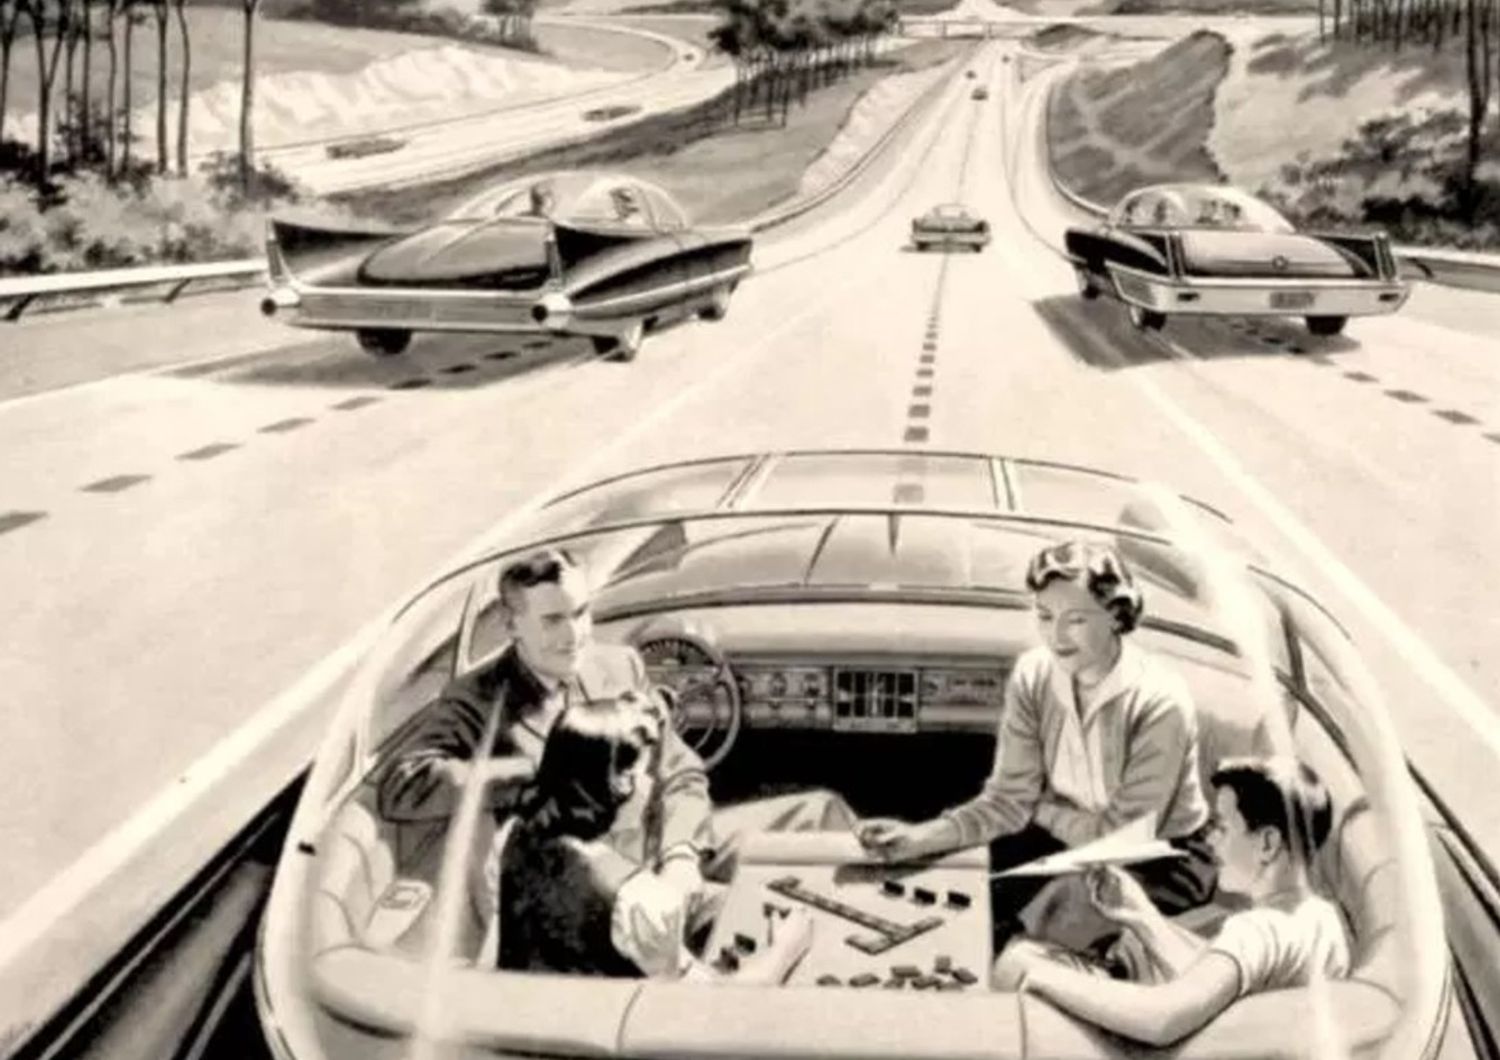 Una illustrazione degli anni '50 che immaginava il futuro dell'auto pubblicata qui&nbsp;https://qz.com/781113/how-florida-became-the-most-important-state-in-the-race-to-legalize-self-driving-cars/